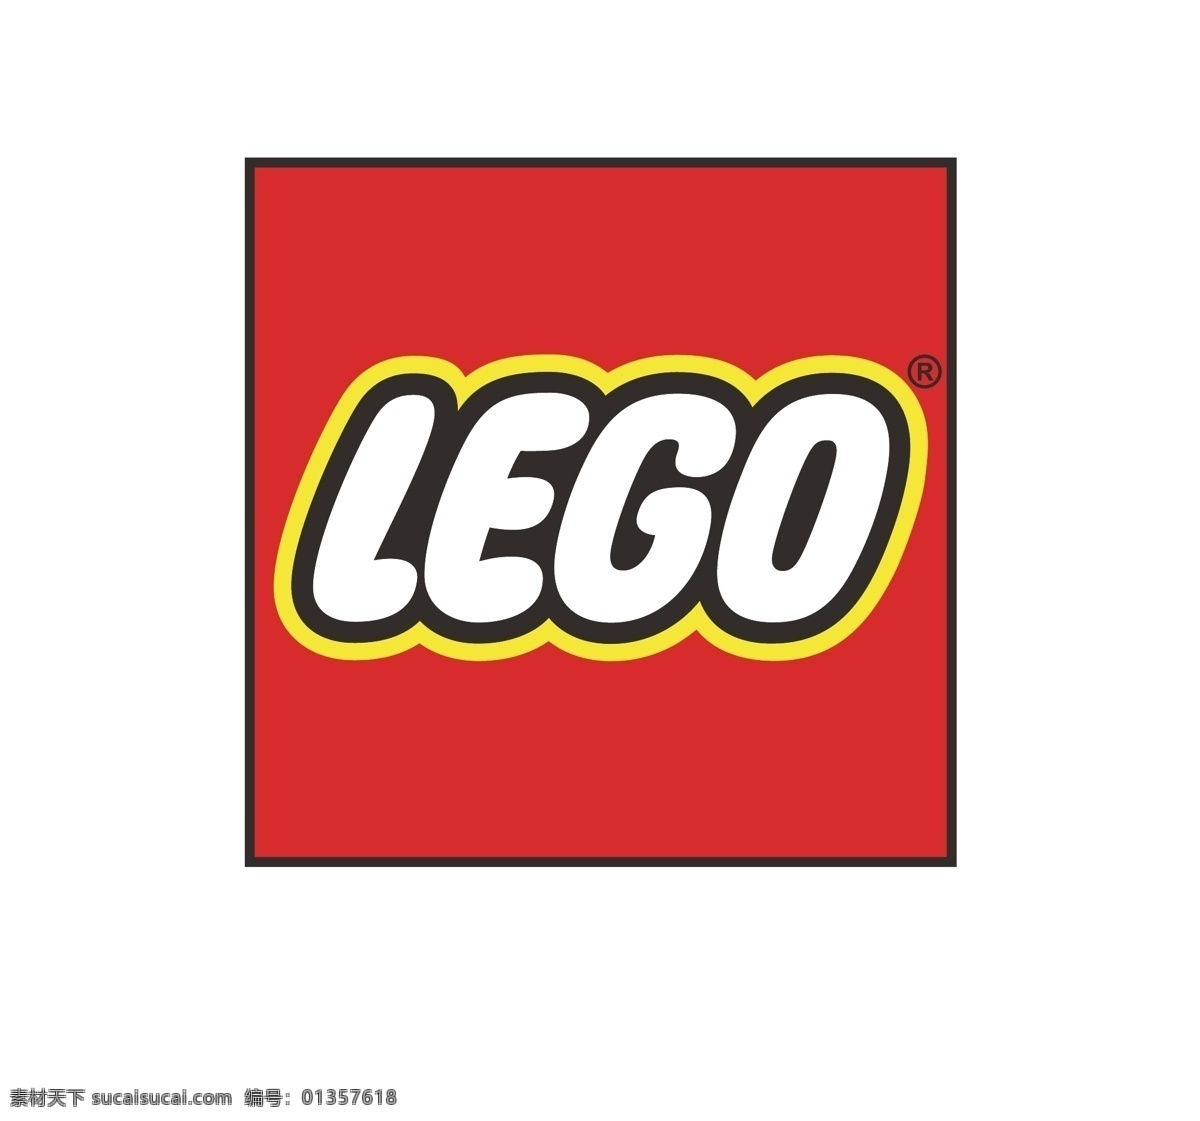 乐高 logo lego 标准矢量 vi 标准 logo设计